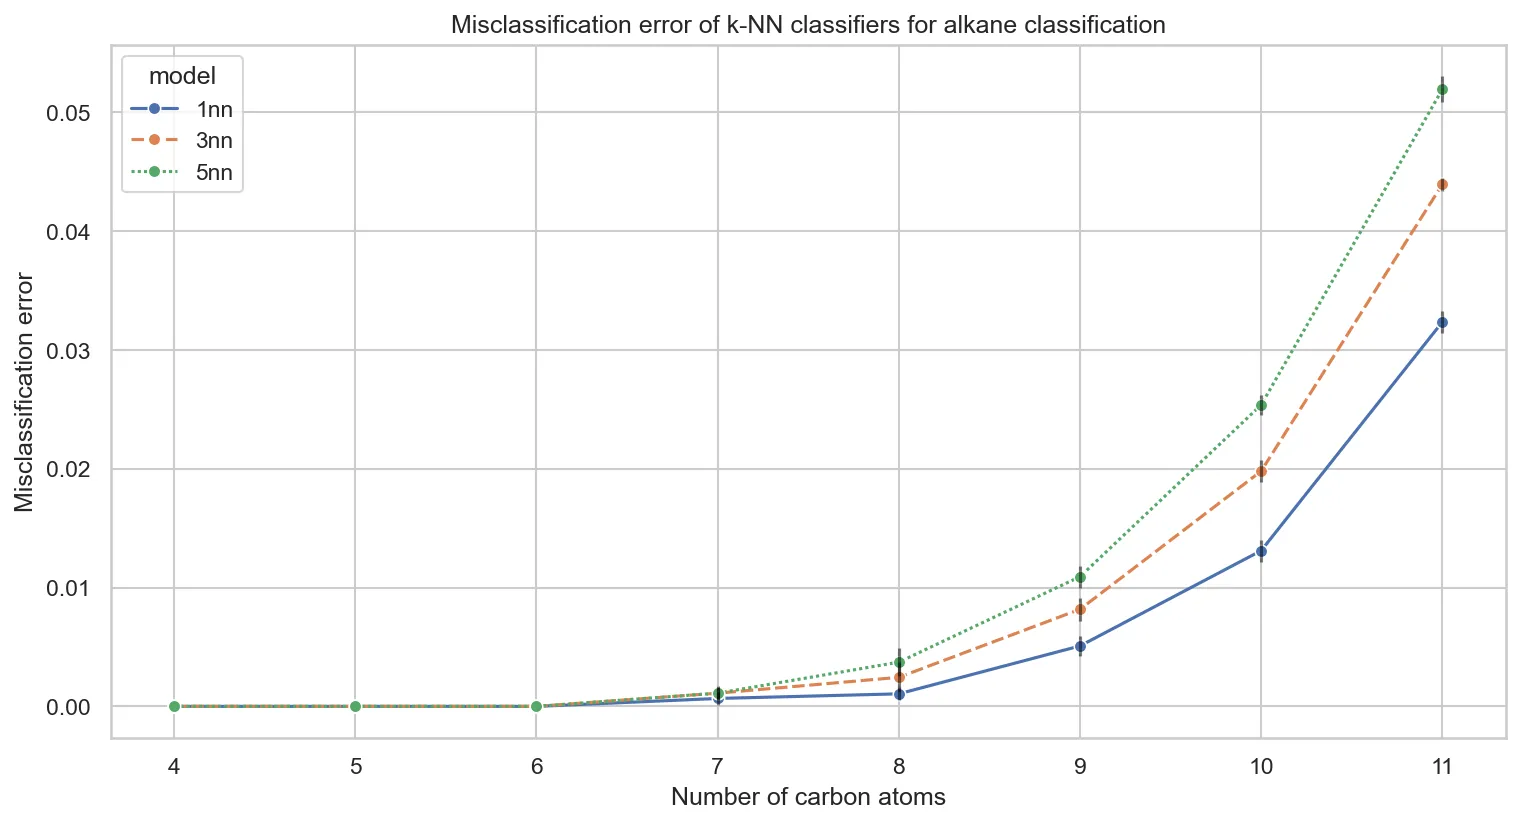 Misclassification error of k-NN classifier for alkane classification